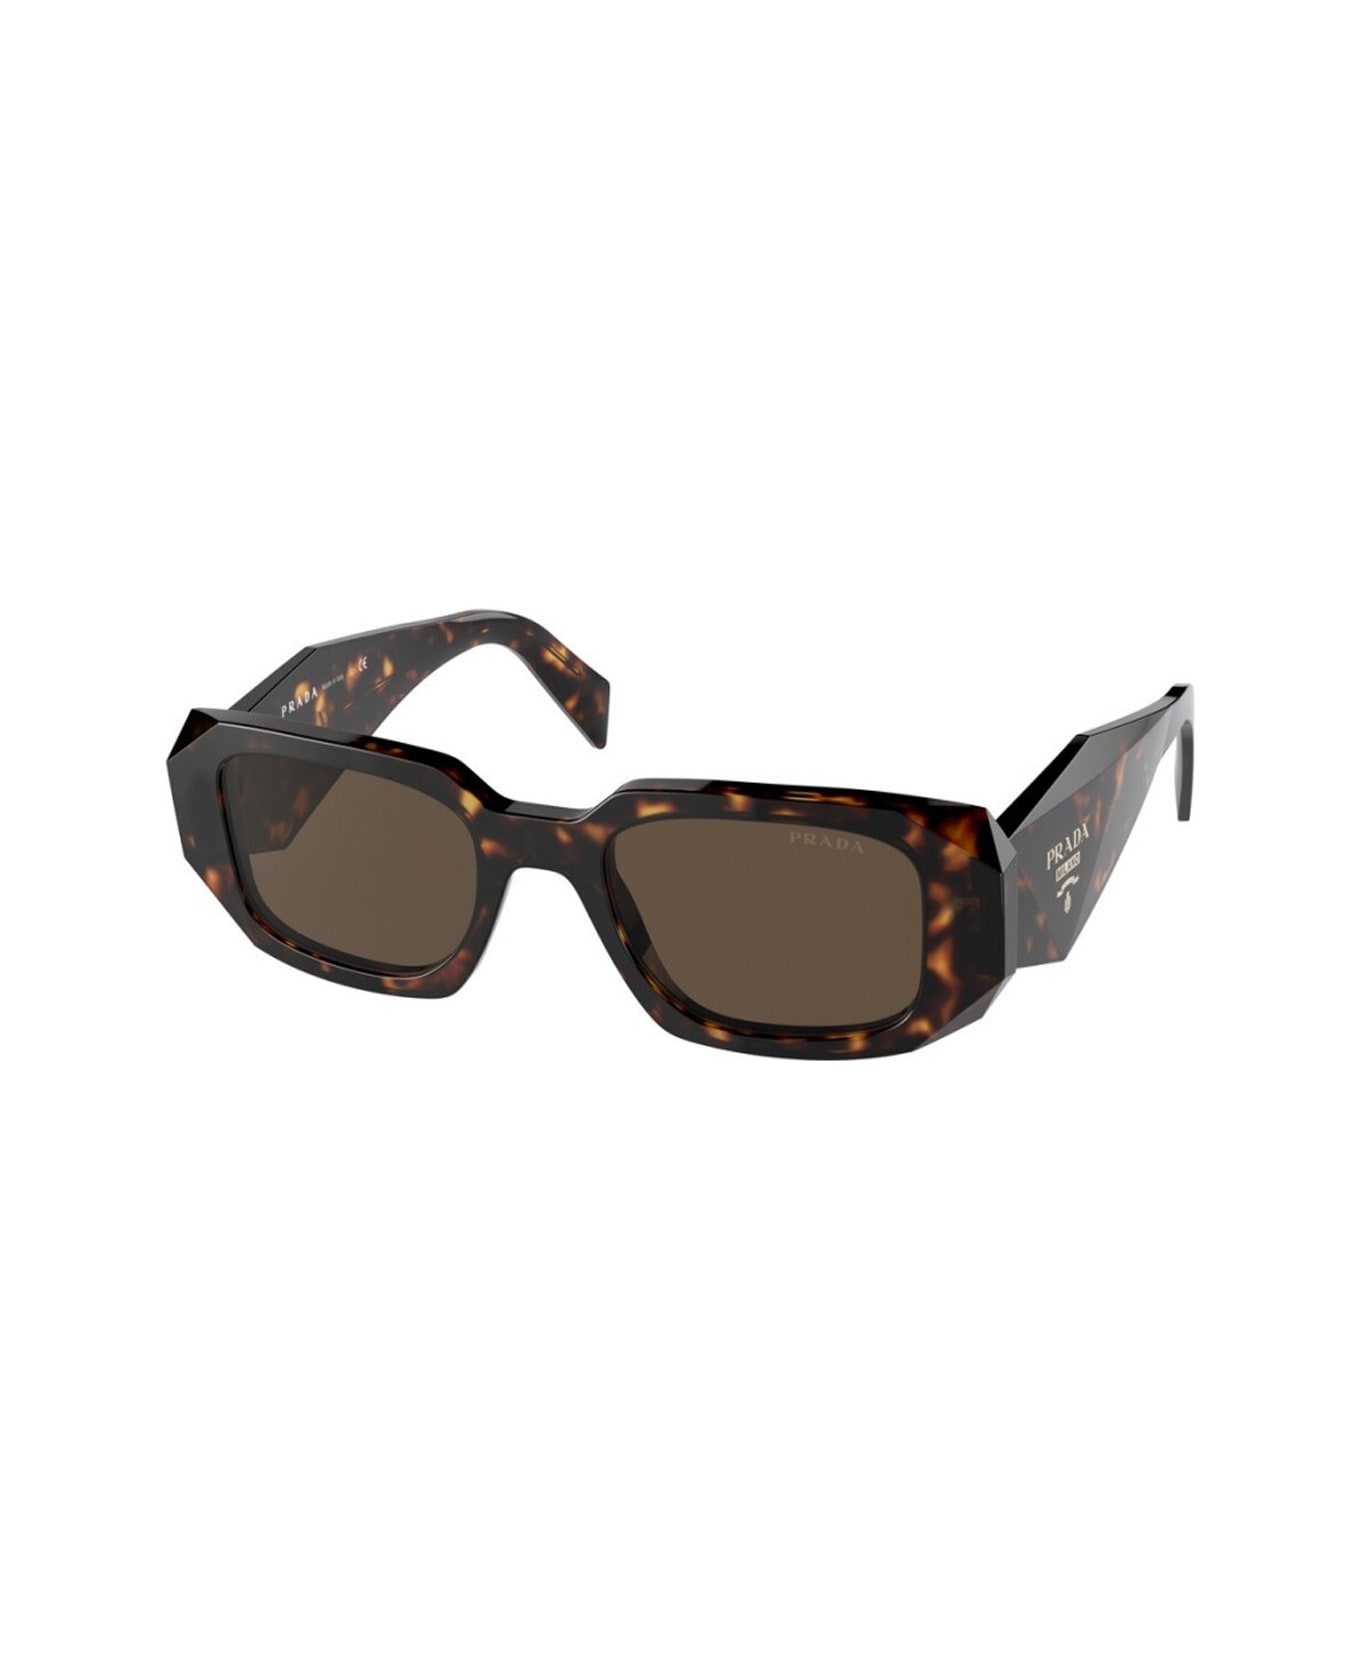 Prada Eyewear 11ab4b20a - - Prada Sunglasses - Marrone